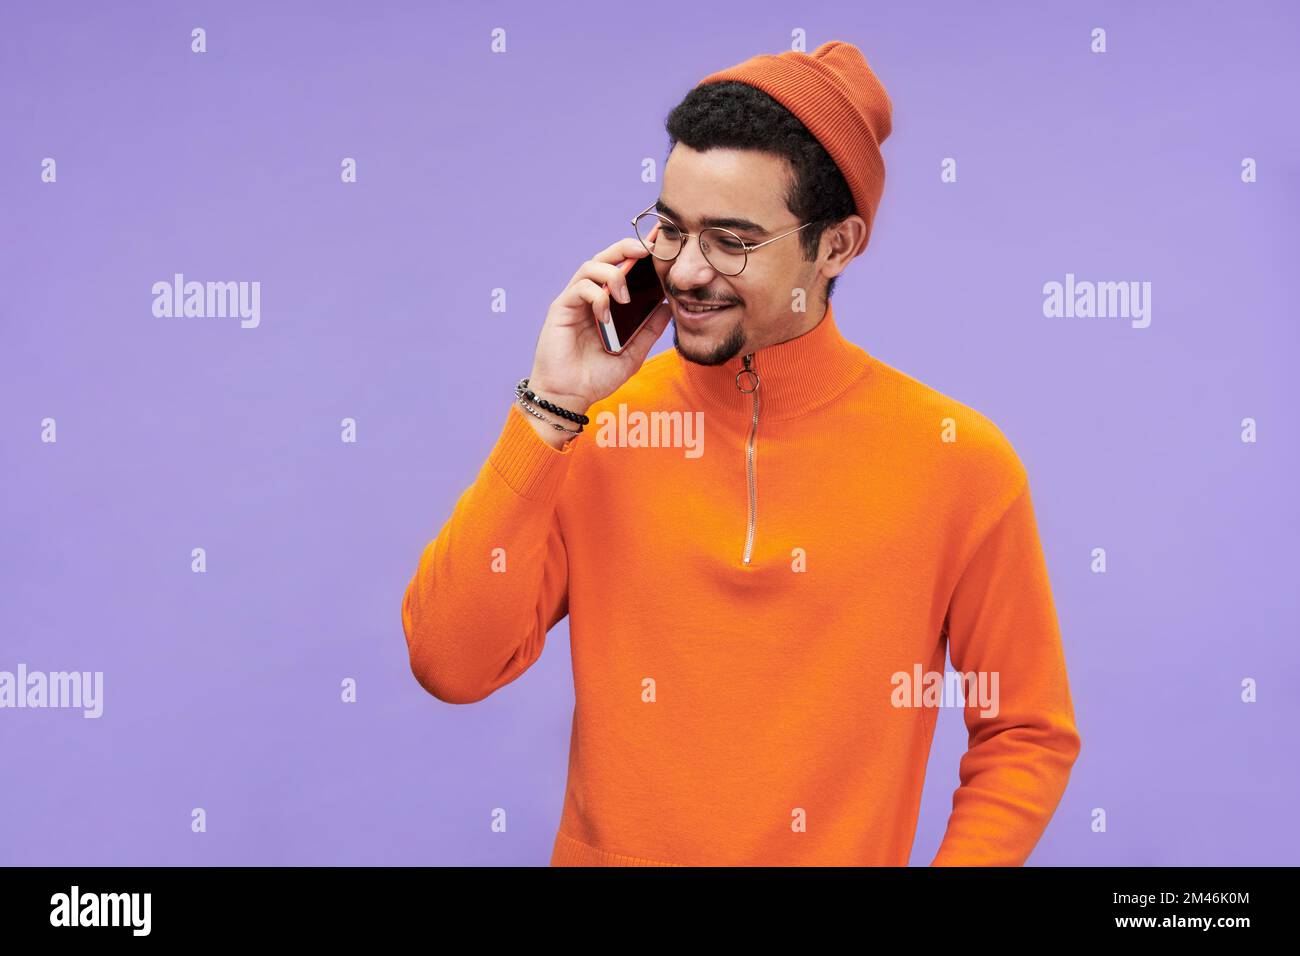 Tipo feliz en gafas, pullover naranja y gorro hablando en el teléfono móvil frente a la cámara contra el fondo violeta Foto de stock